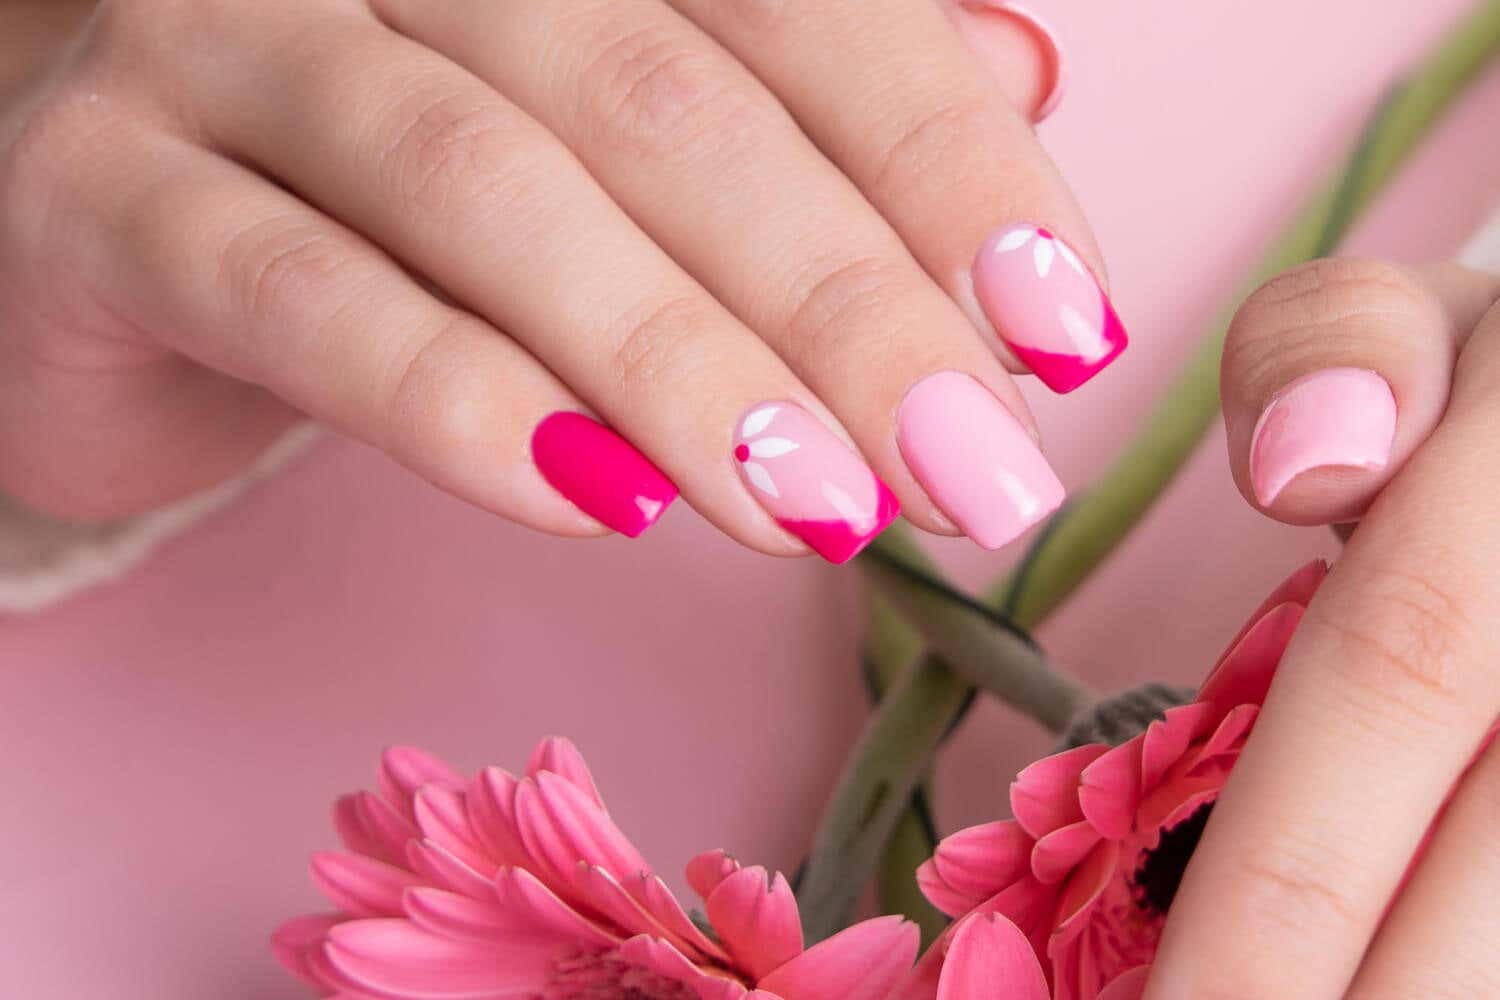 La manicura rosa combinada con una francesa en fucsia, hará lucir tus manos con un estilo auténtico y glamuroso. 